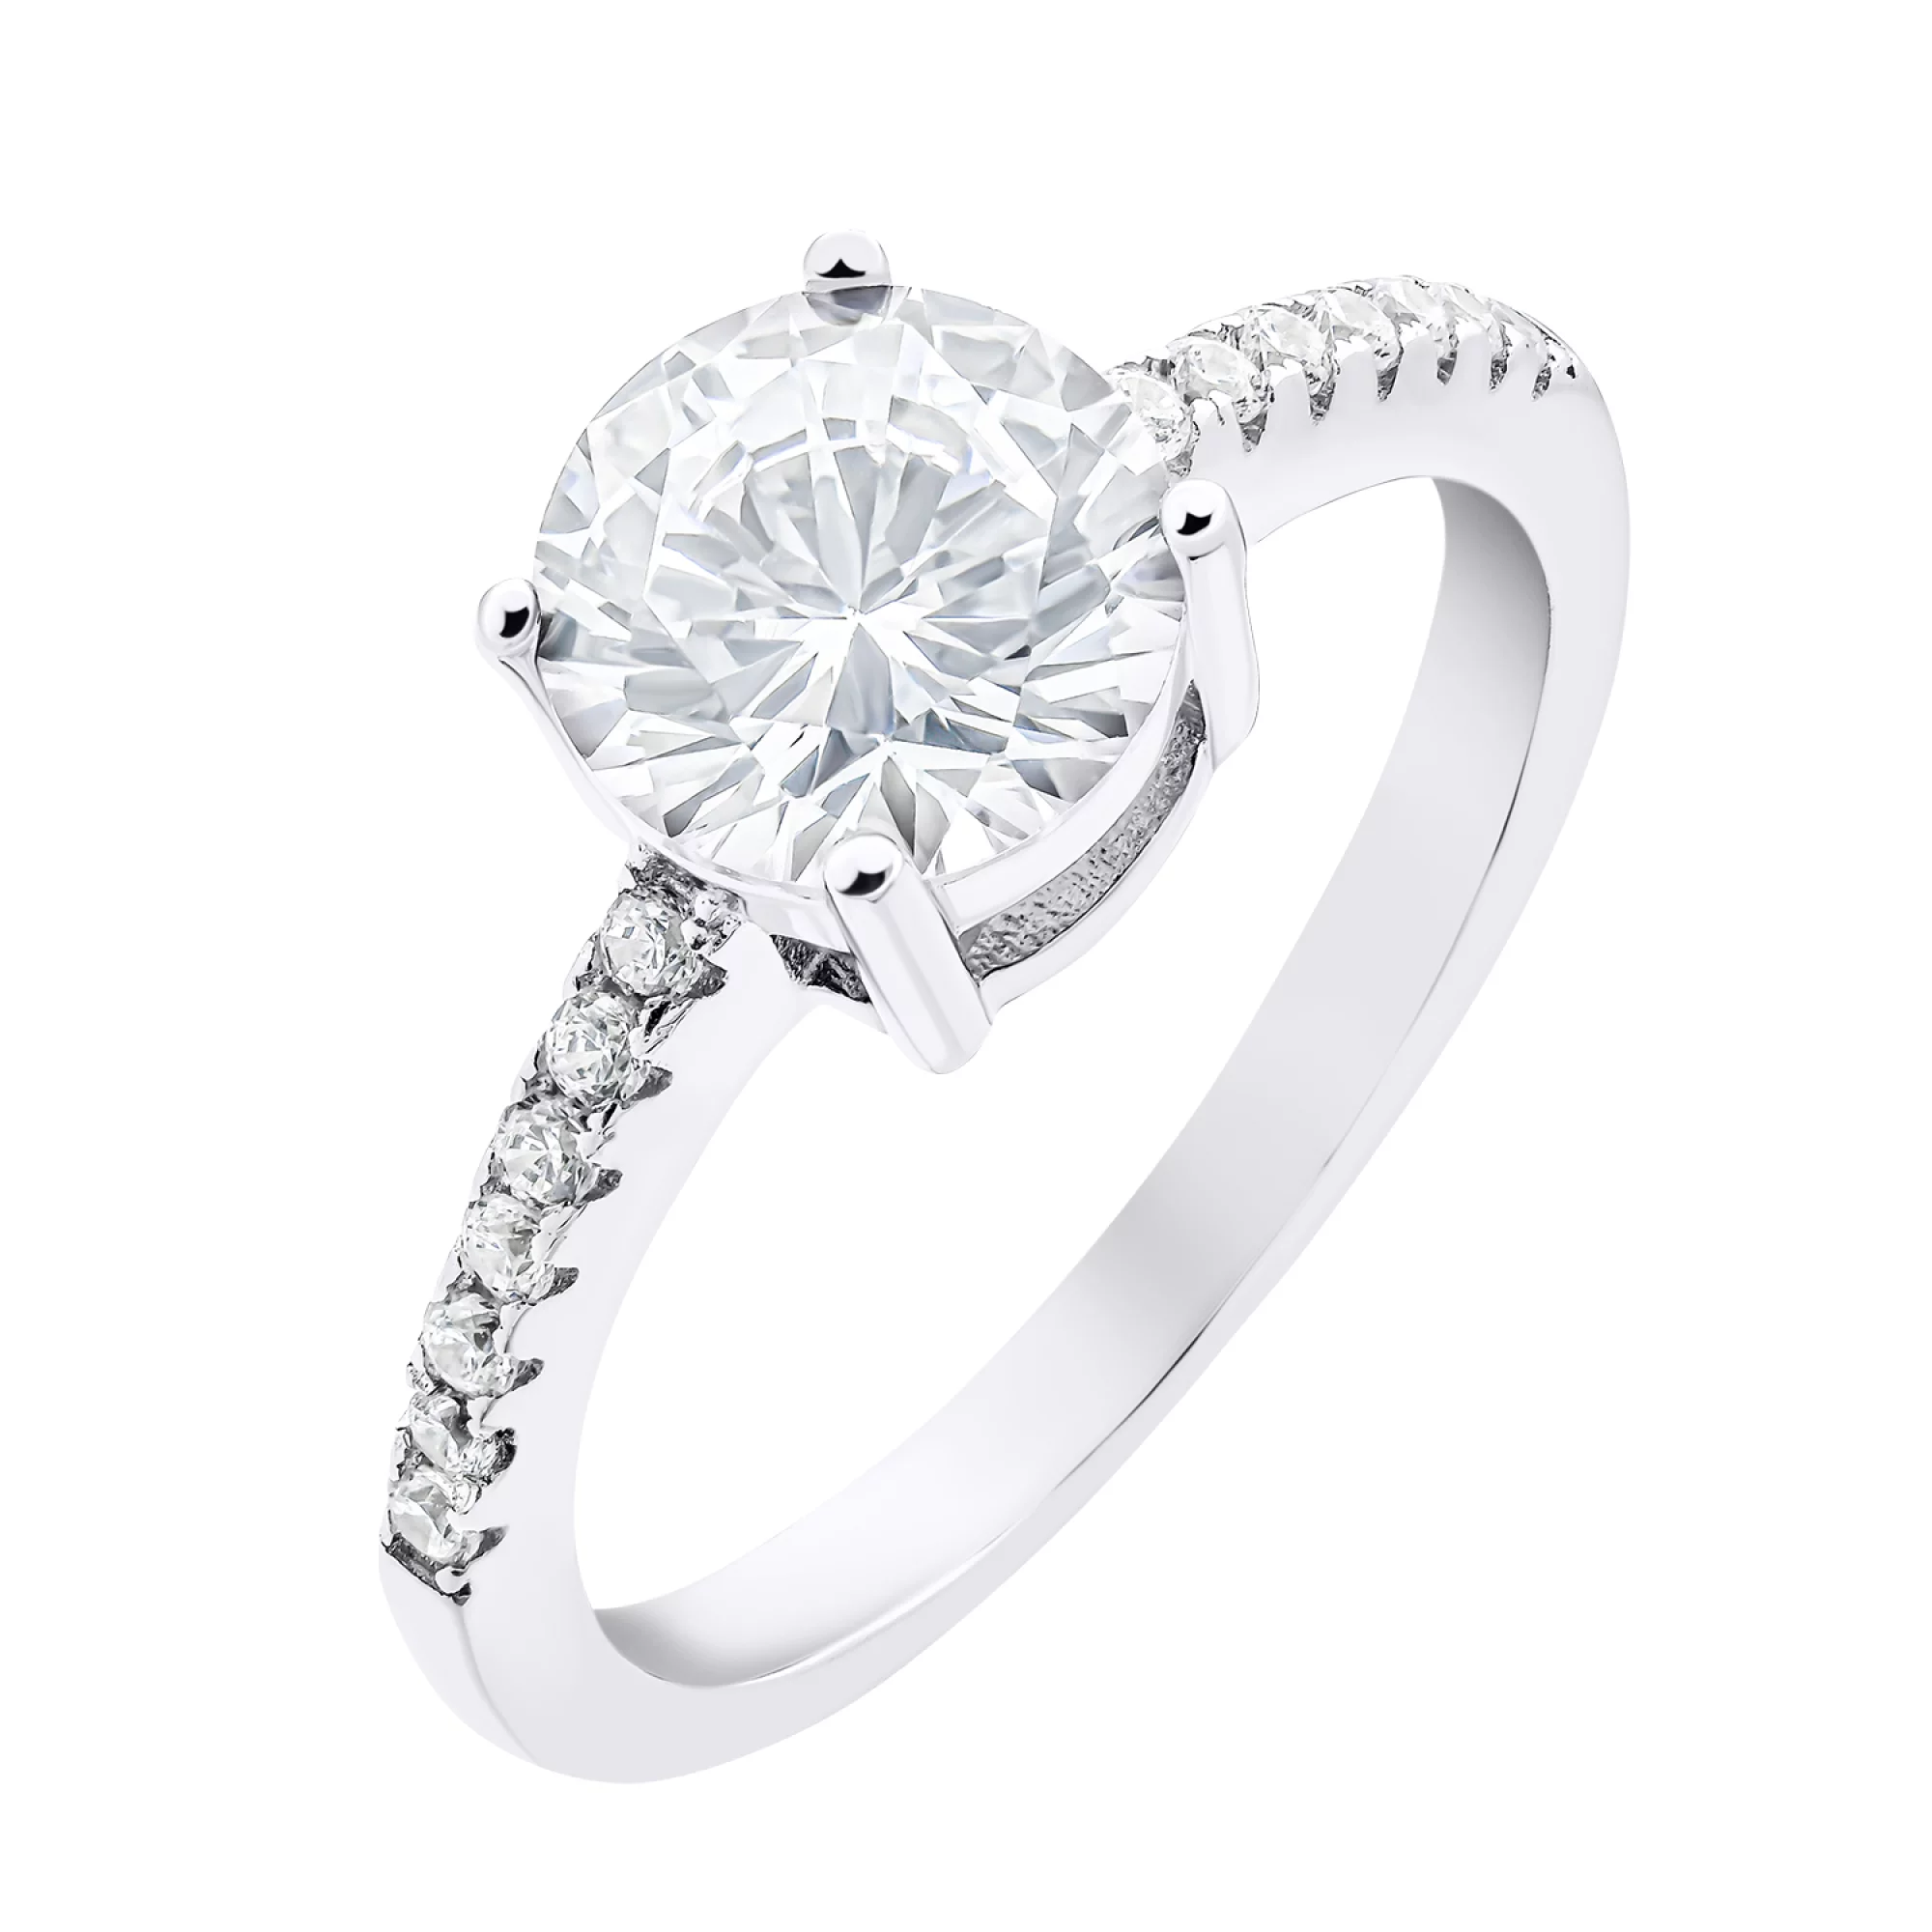 Помолвочное кольцо из серебра с дорожкой фианитов - 1520450 – изображение 1